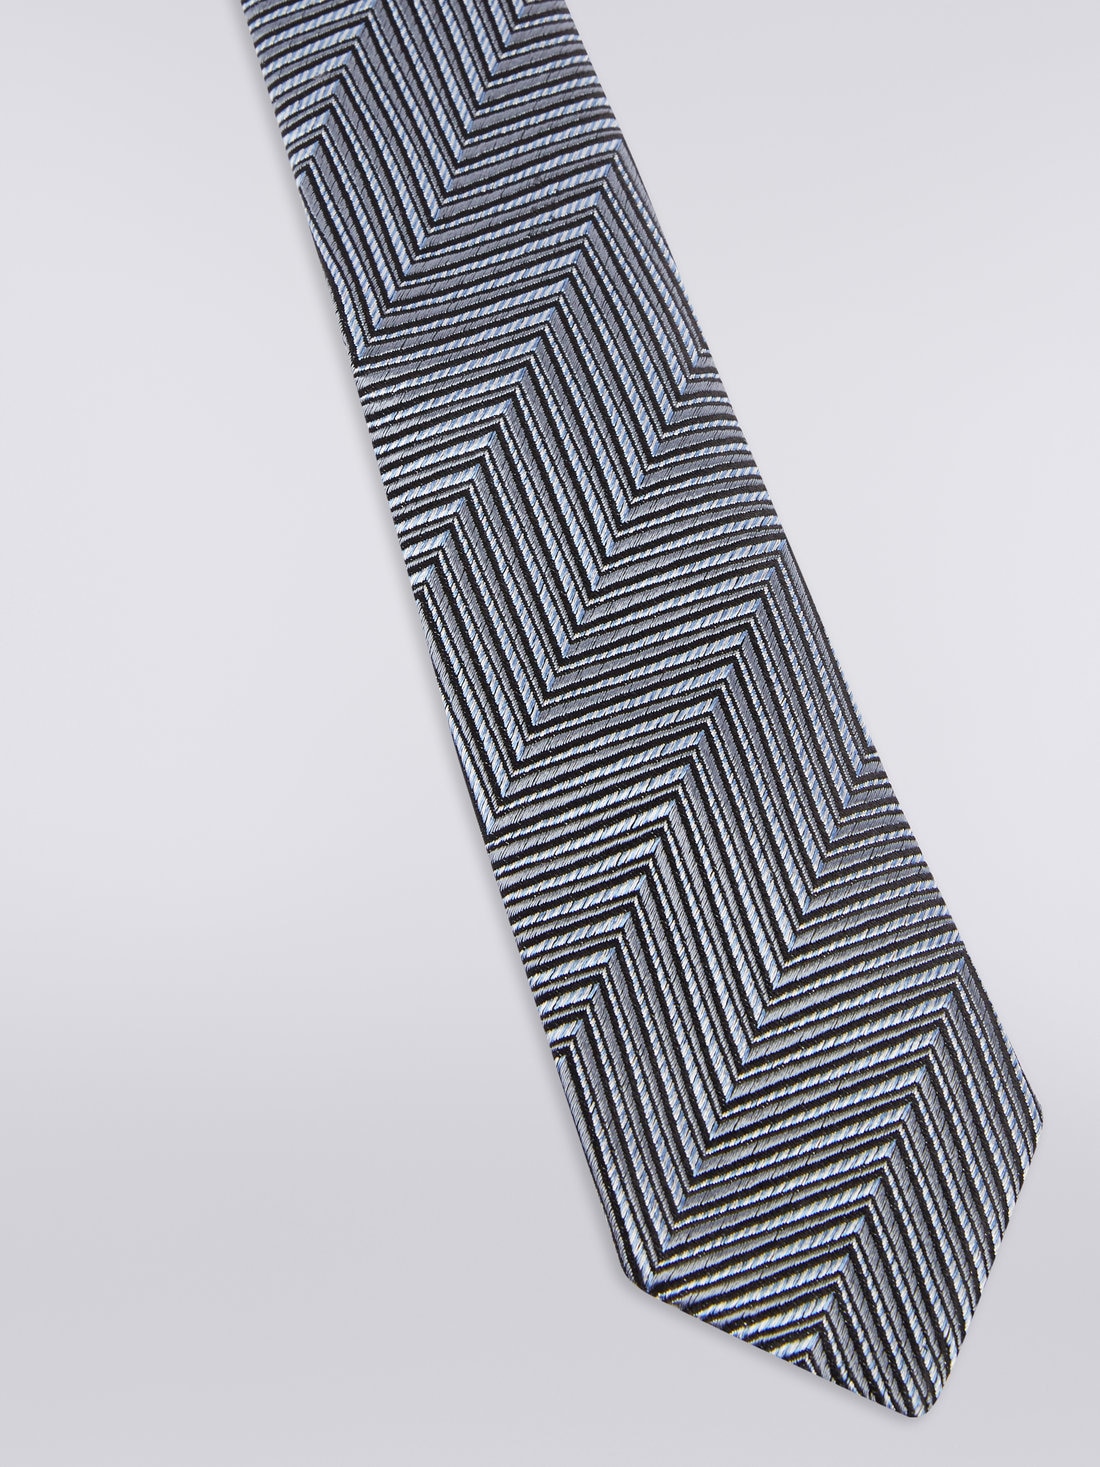 Cravatta in seta chevron tonale, Multicolore - 8051575919886 - 1